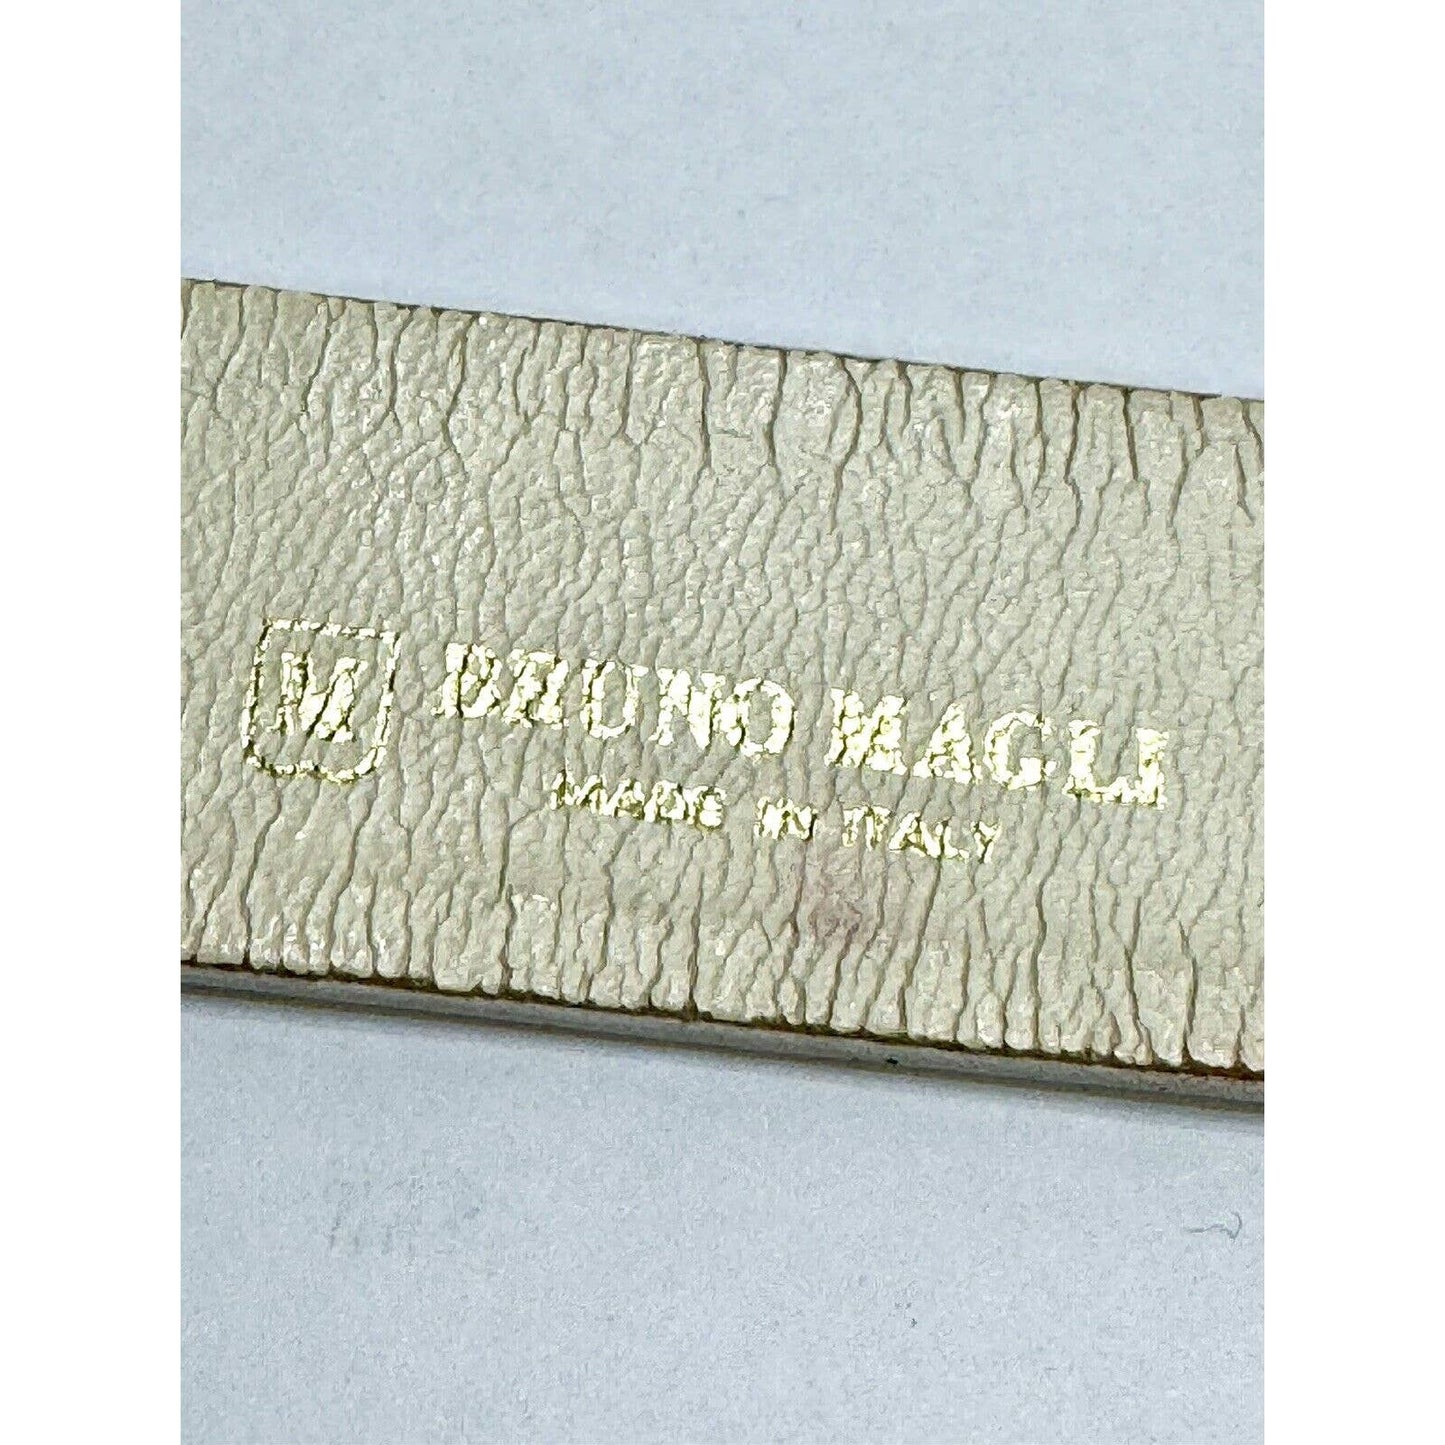 Bruno MagliBruno Magli Vintage Women’s White Belt With Gold Metal Accents - Black Dog Vintage